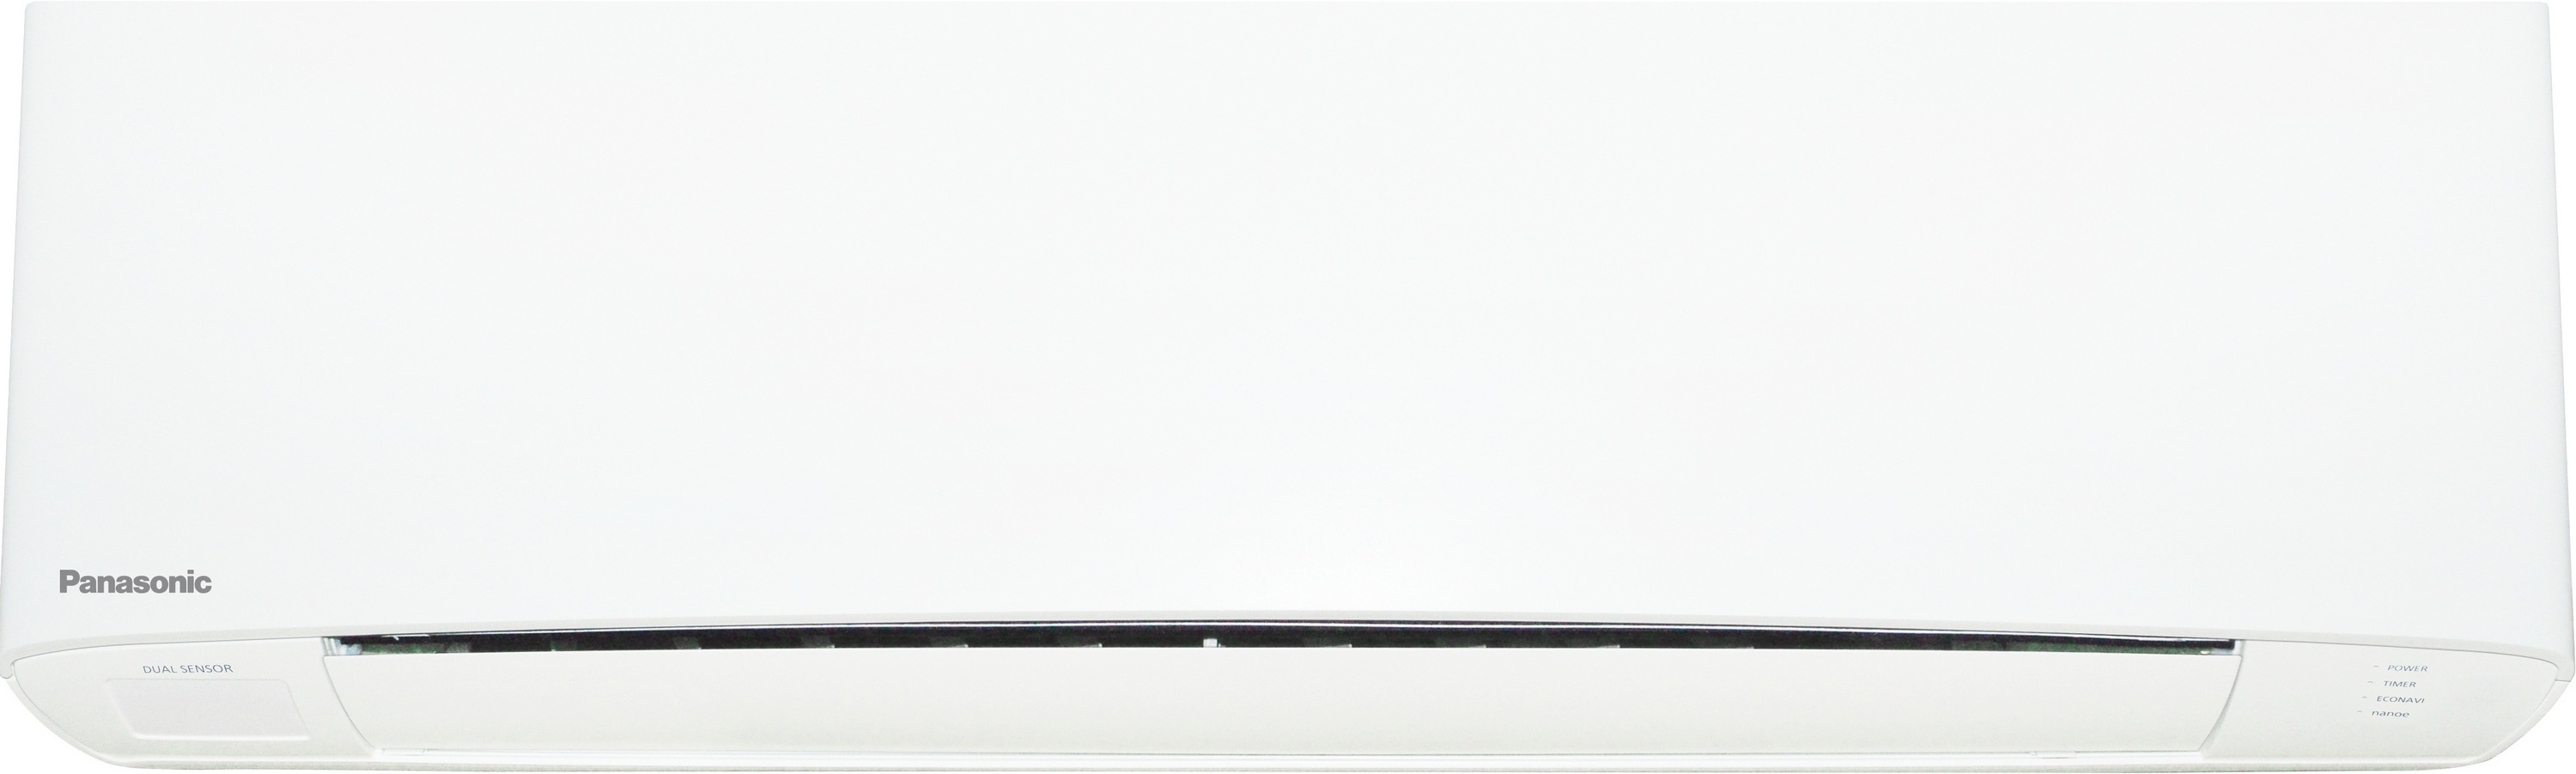 Внутренний блок мультисплит-системы Panasonic Flagship White CS-Z35TKEW цена 26000.00 грн - фотография 2